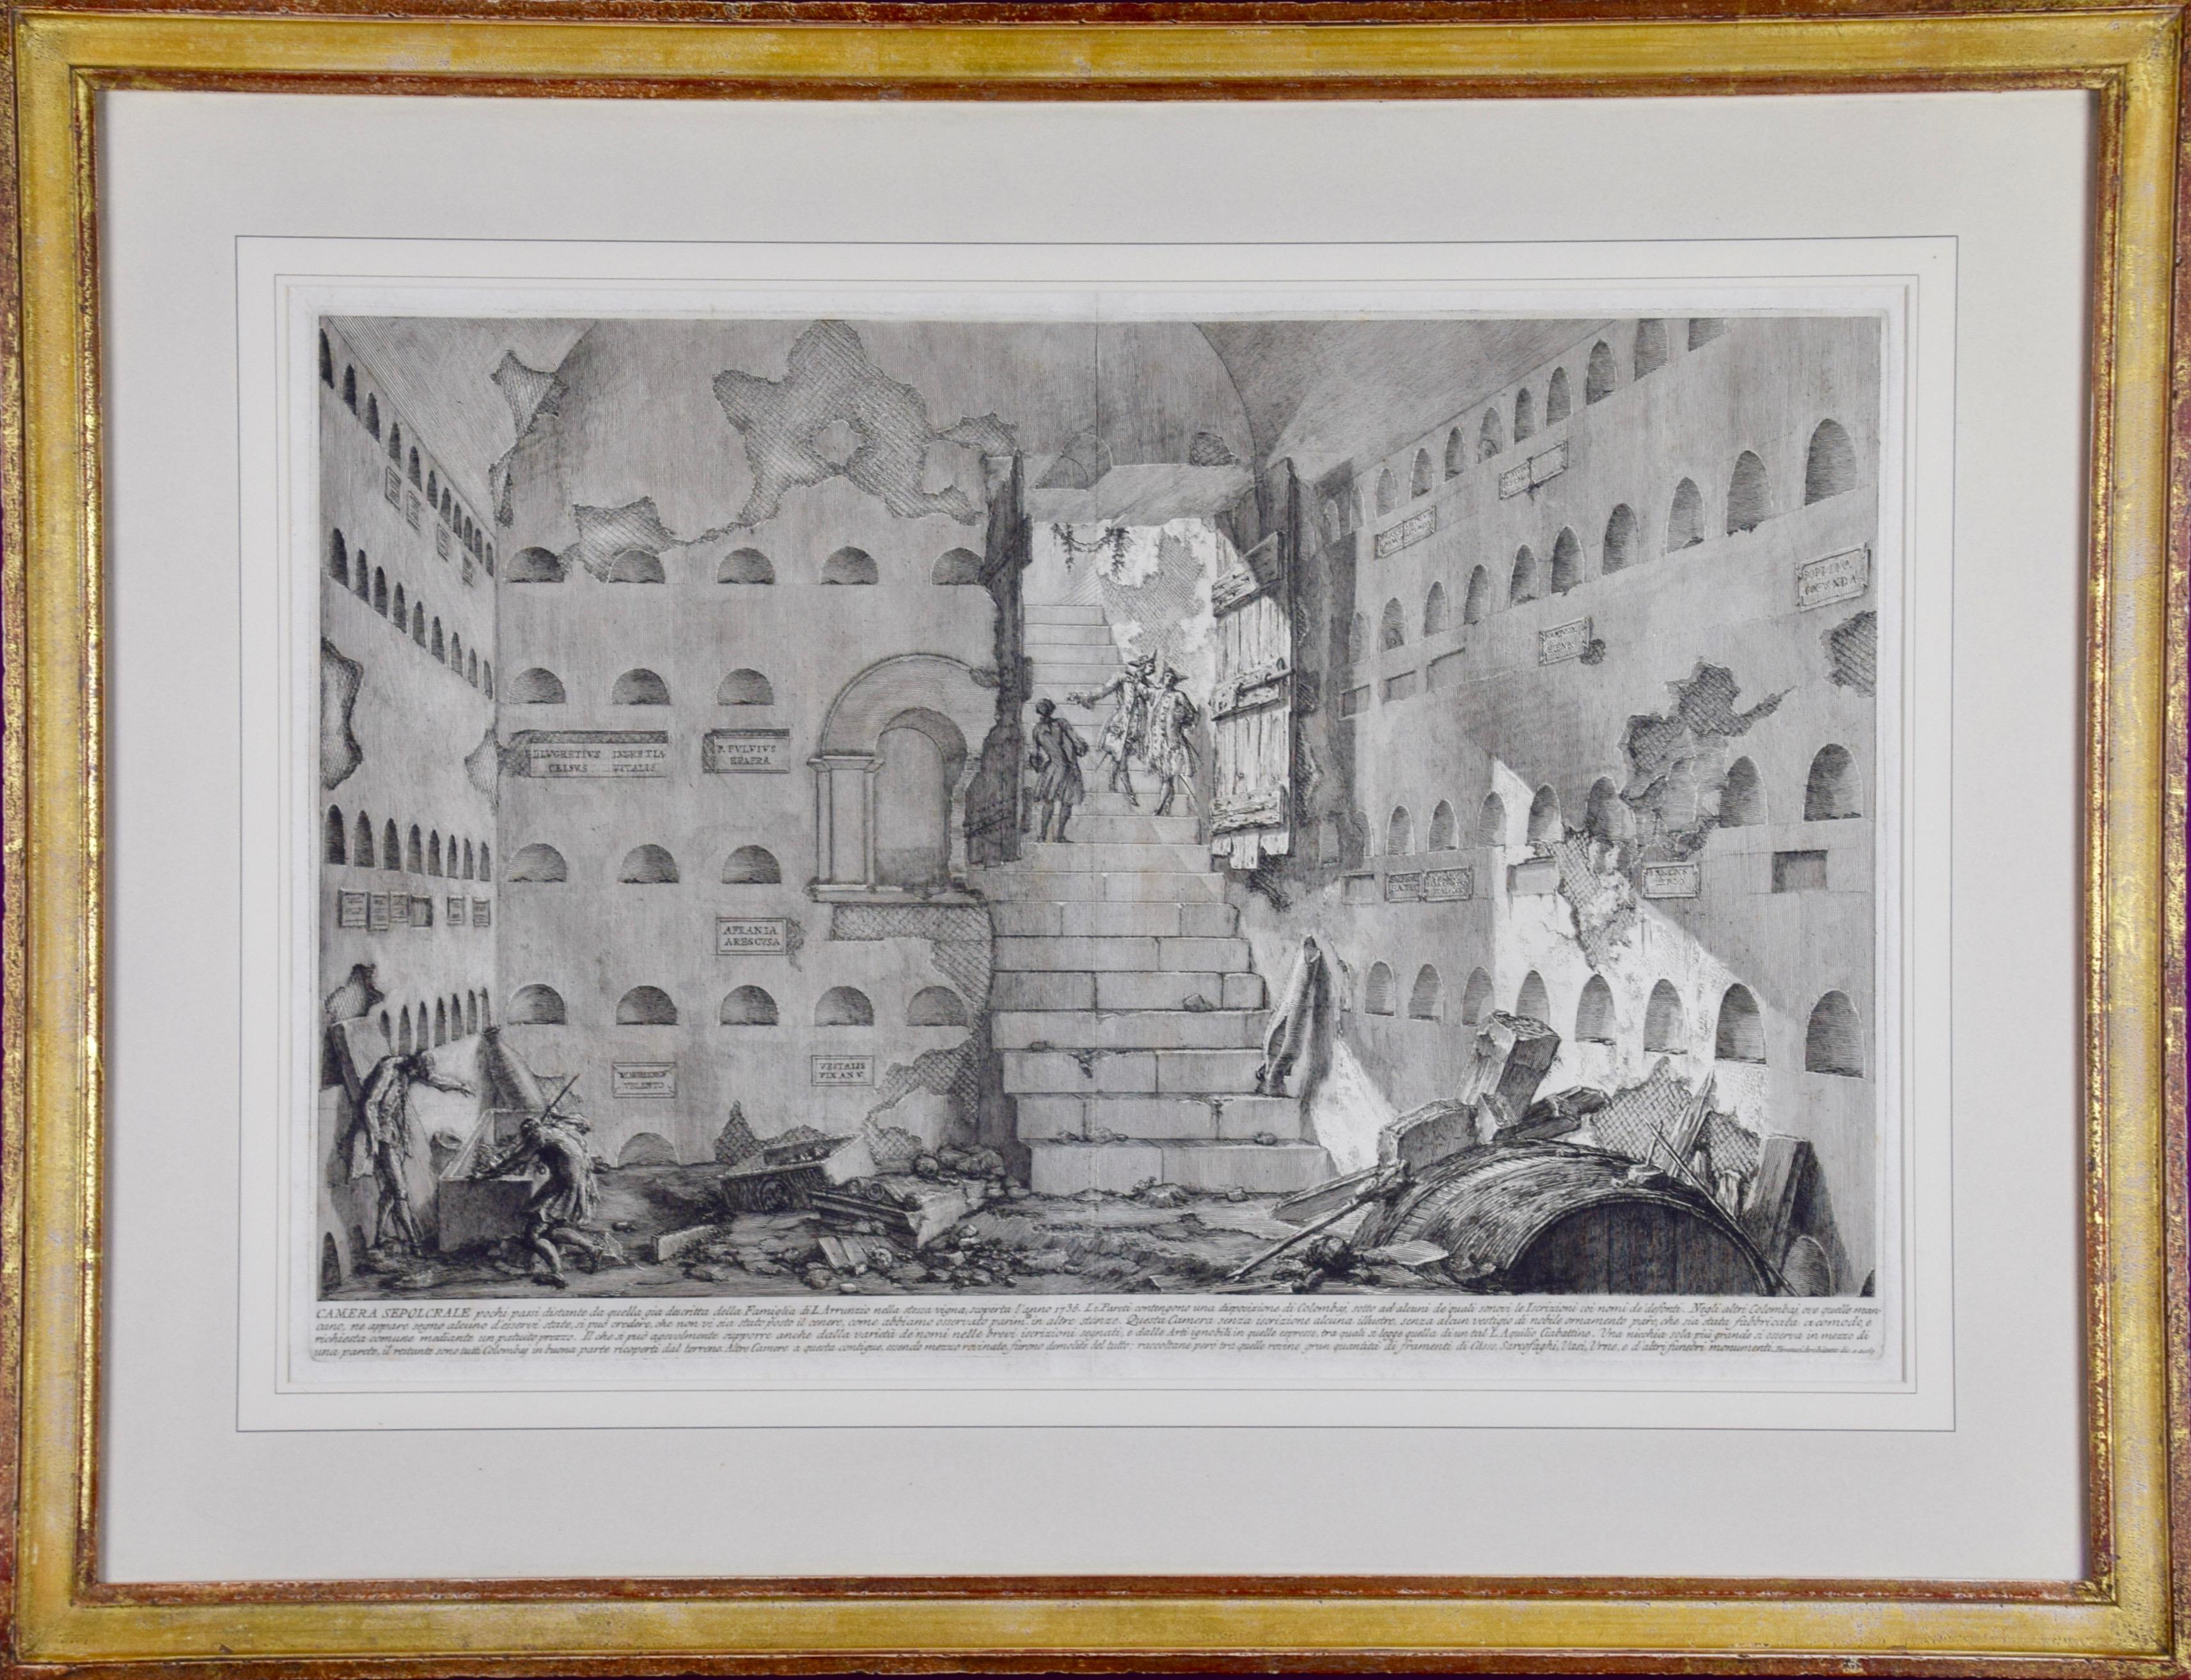 Giovanni Battista Piranesi Figurative Print - "Camera Sepolcrale" Piranesi 18th Century Etching of Ancient Roman Architecture 